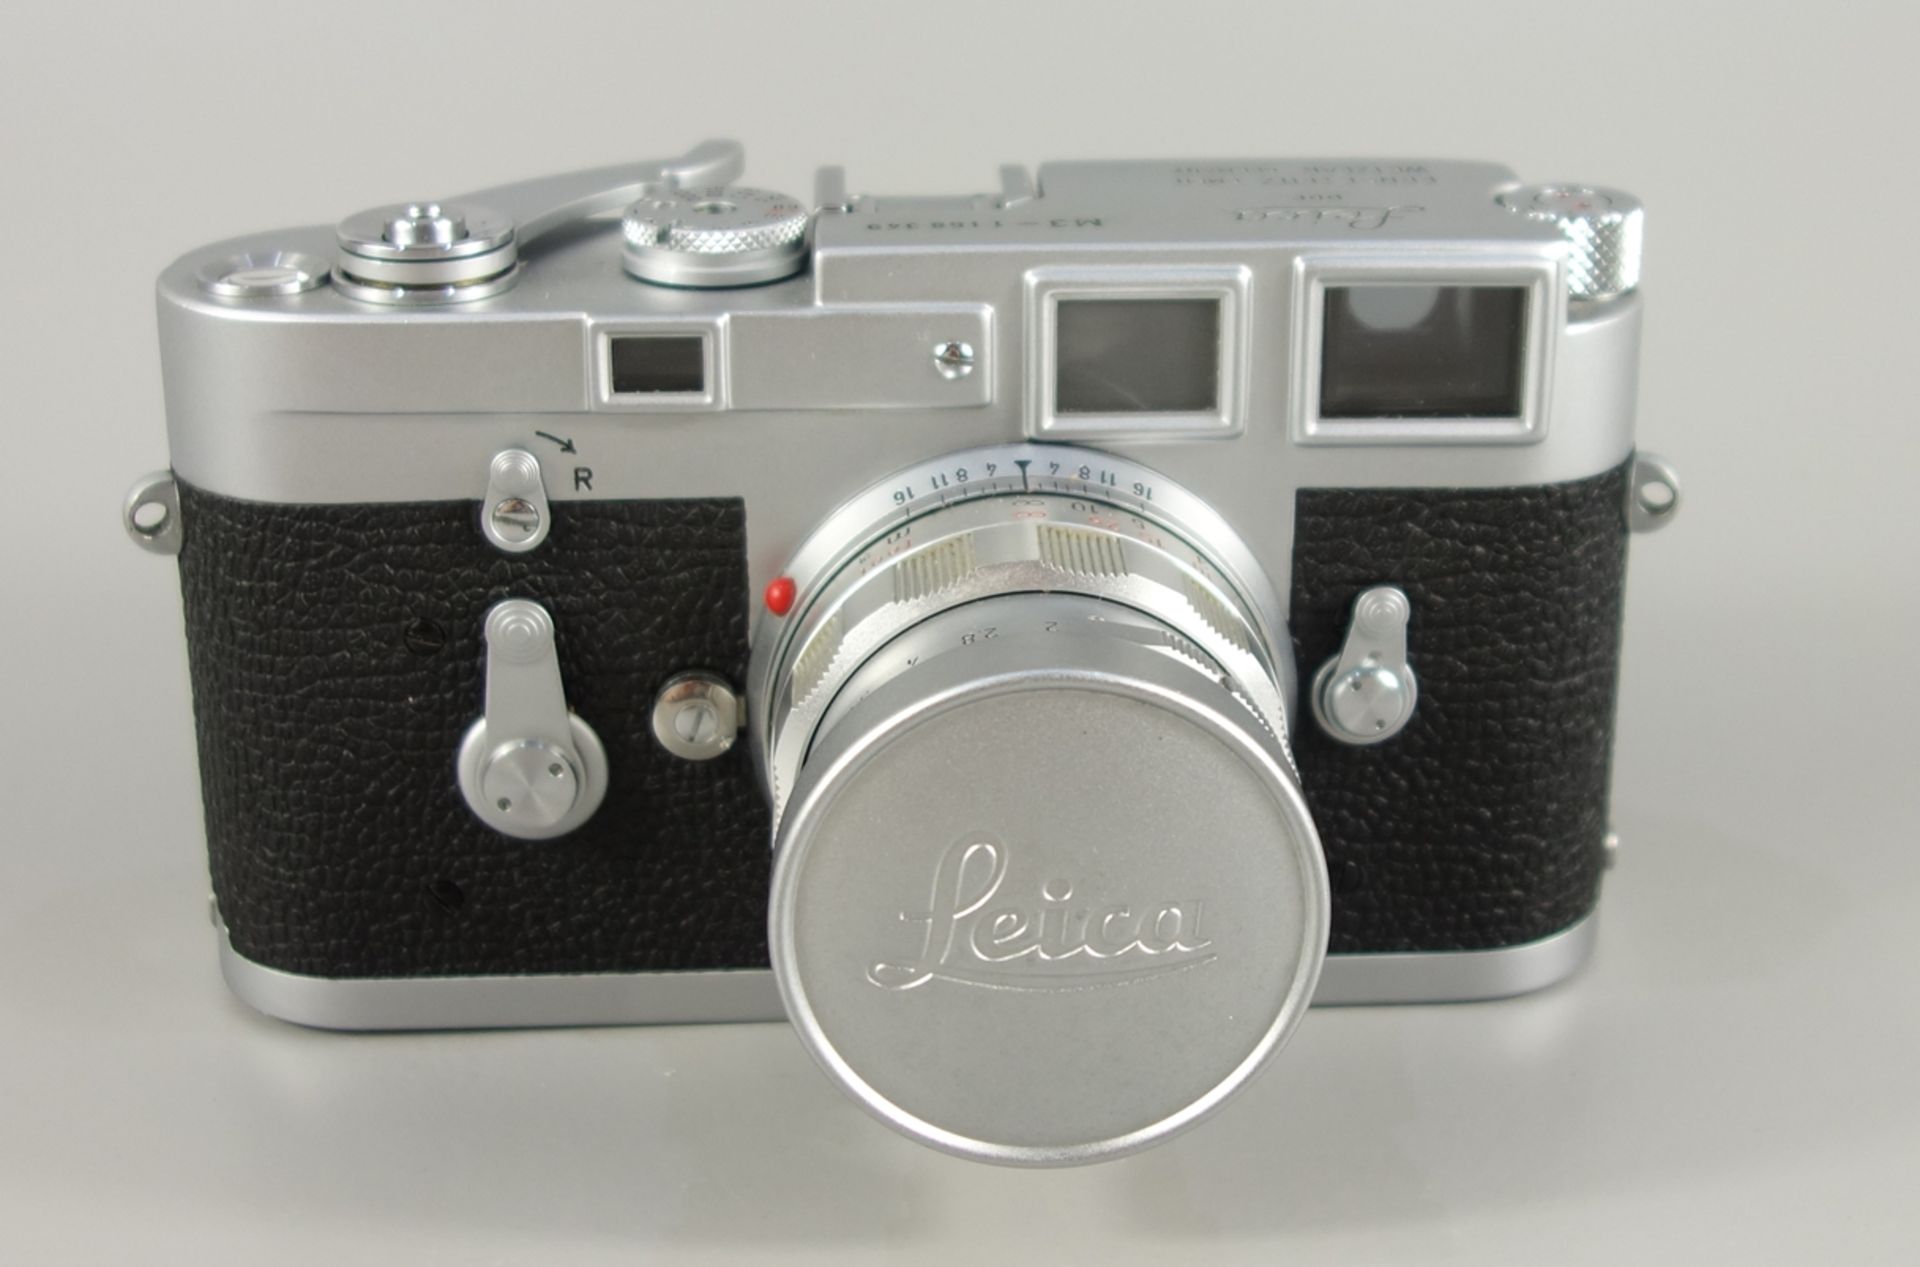 Leica M3, Messsucherkamera, Ernst Leitz Wetzlar, 1966, Serien-Nr. 1158349, mit Objektiv Leitz - Bild 2 aus 5